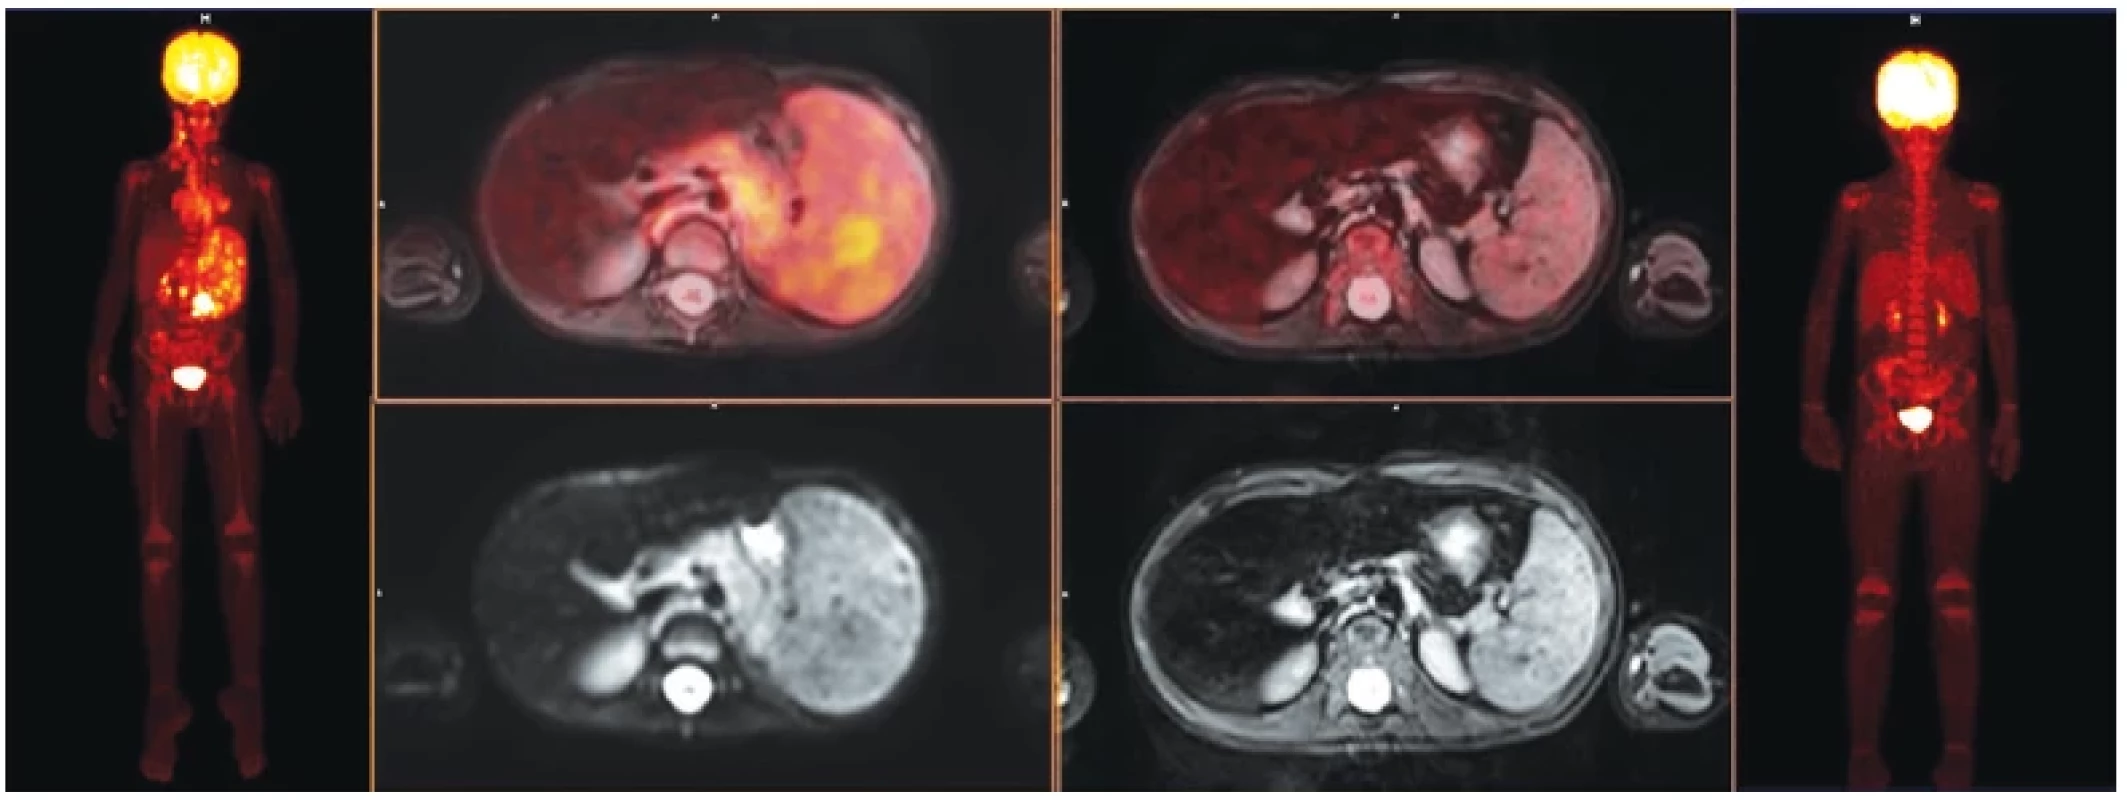 Šestiletý chlapec s Hodgkinovým lymfomem, vyšetření s podáním 18F-FDG, vlevo zobrazení před zahájením léčby, celotělový PET
obraz, fúze PET/MRI a T2 vážený obraz, vpravo interim vyšetření s kompletním ústupem metabolického postižení – hodnocení nálezu je
Deauville skóre 1